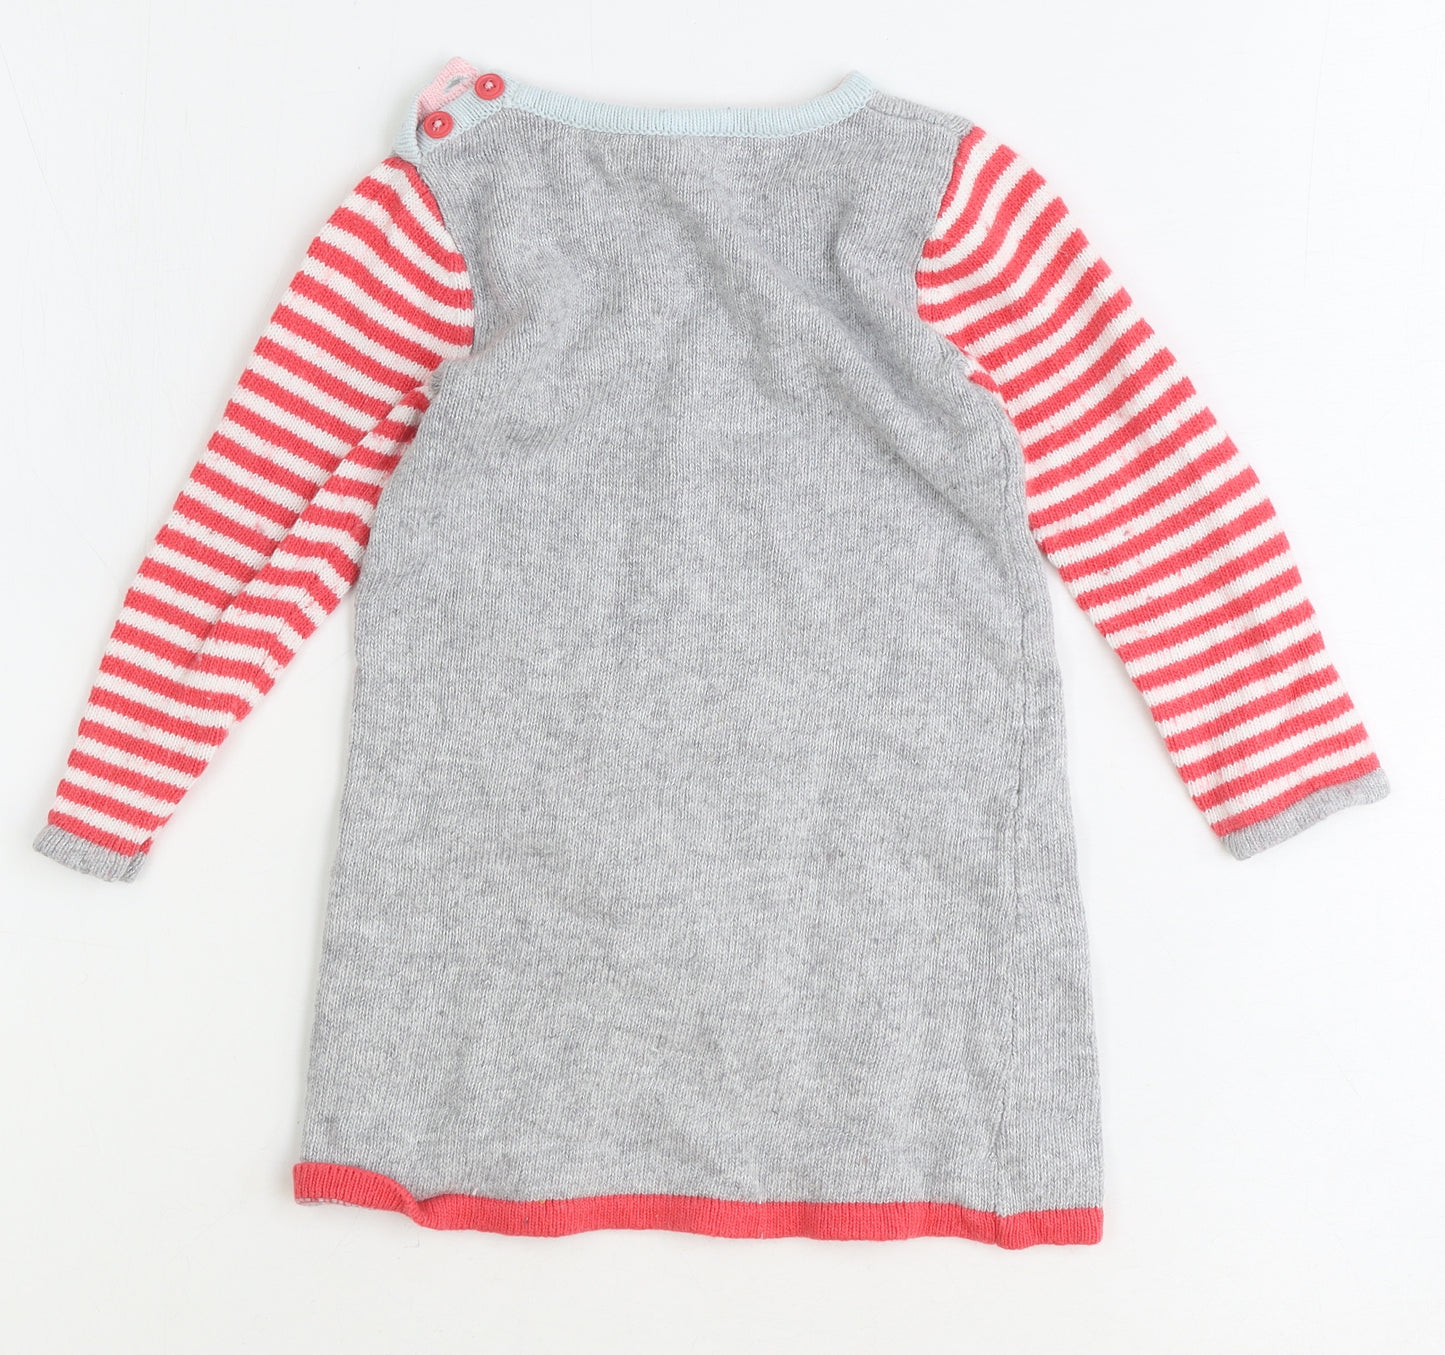 Baby Boden Girls Grey Striped Cotton Jumper Dress Size 2 Years Round Neck Button - Bird